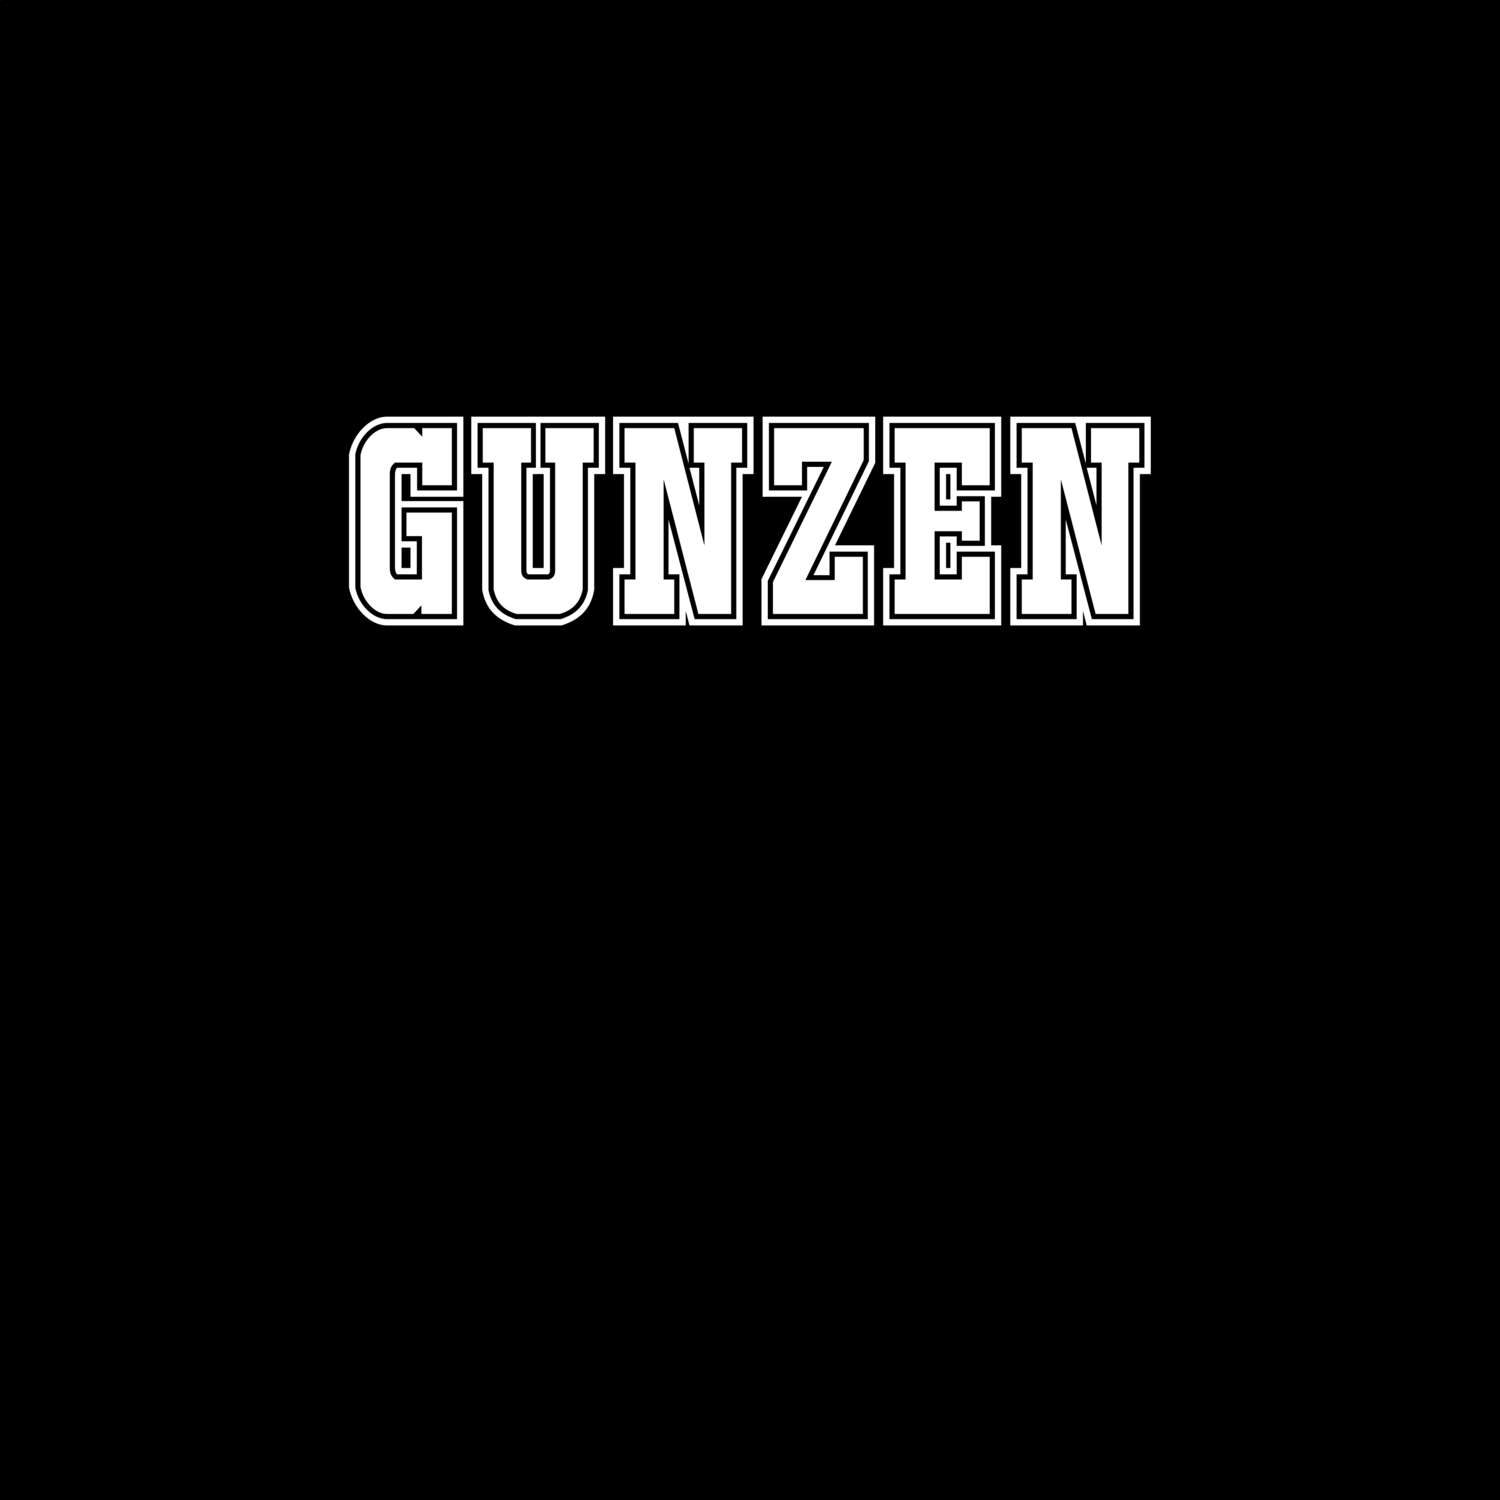 Gunzen T-Shirt »Classic«